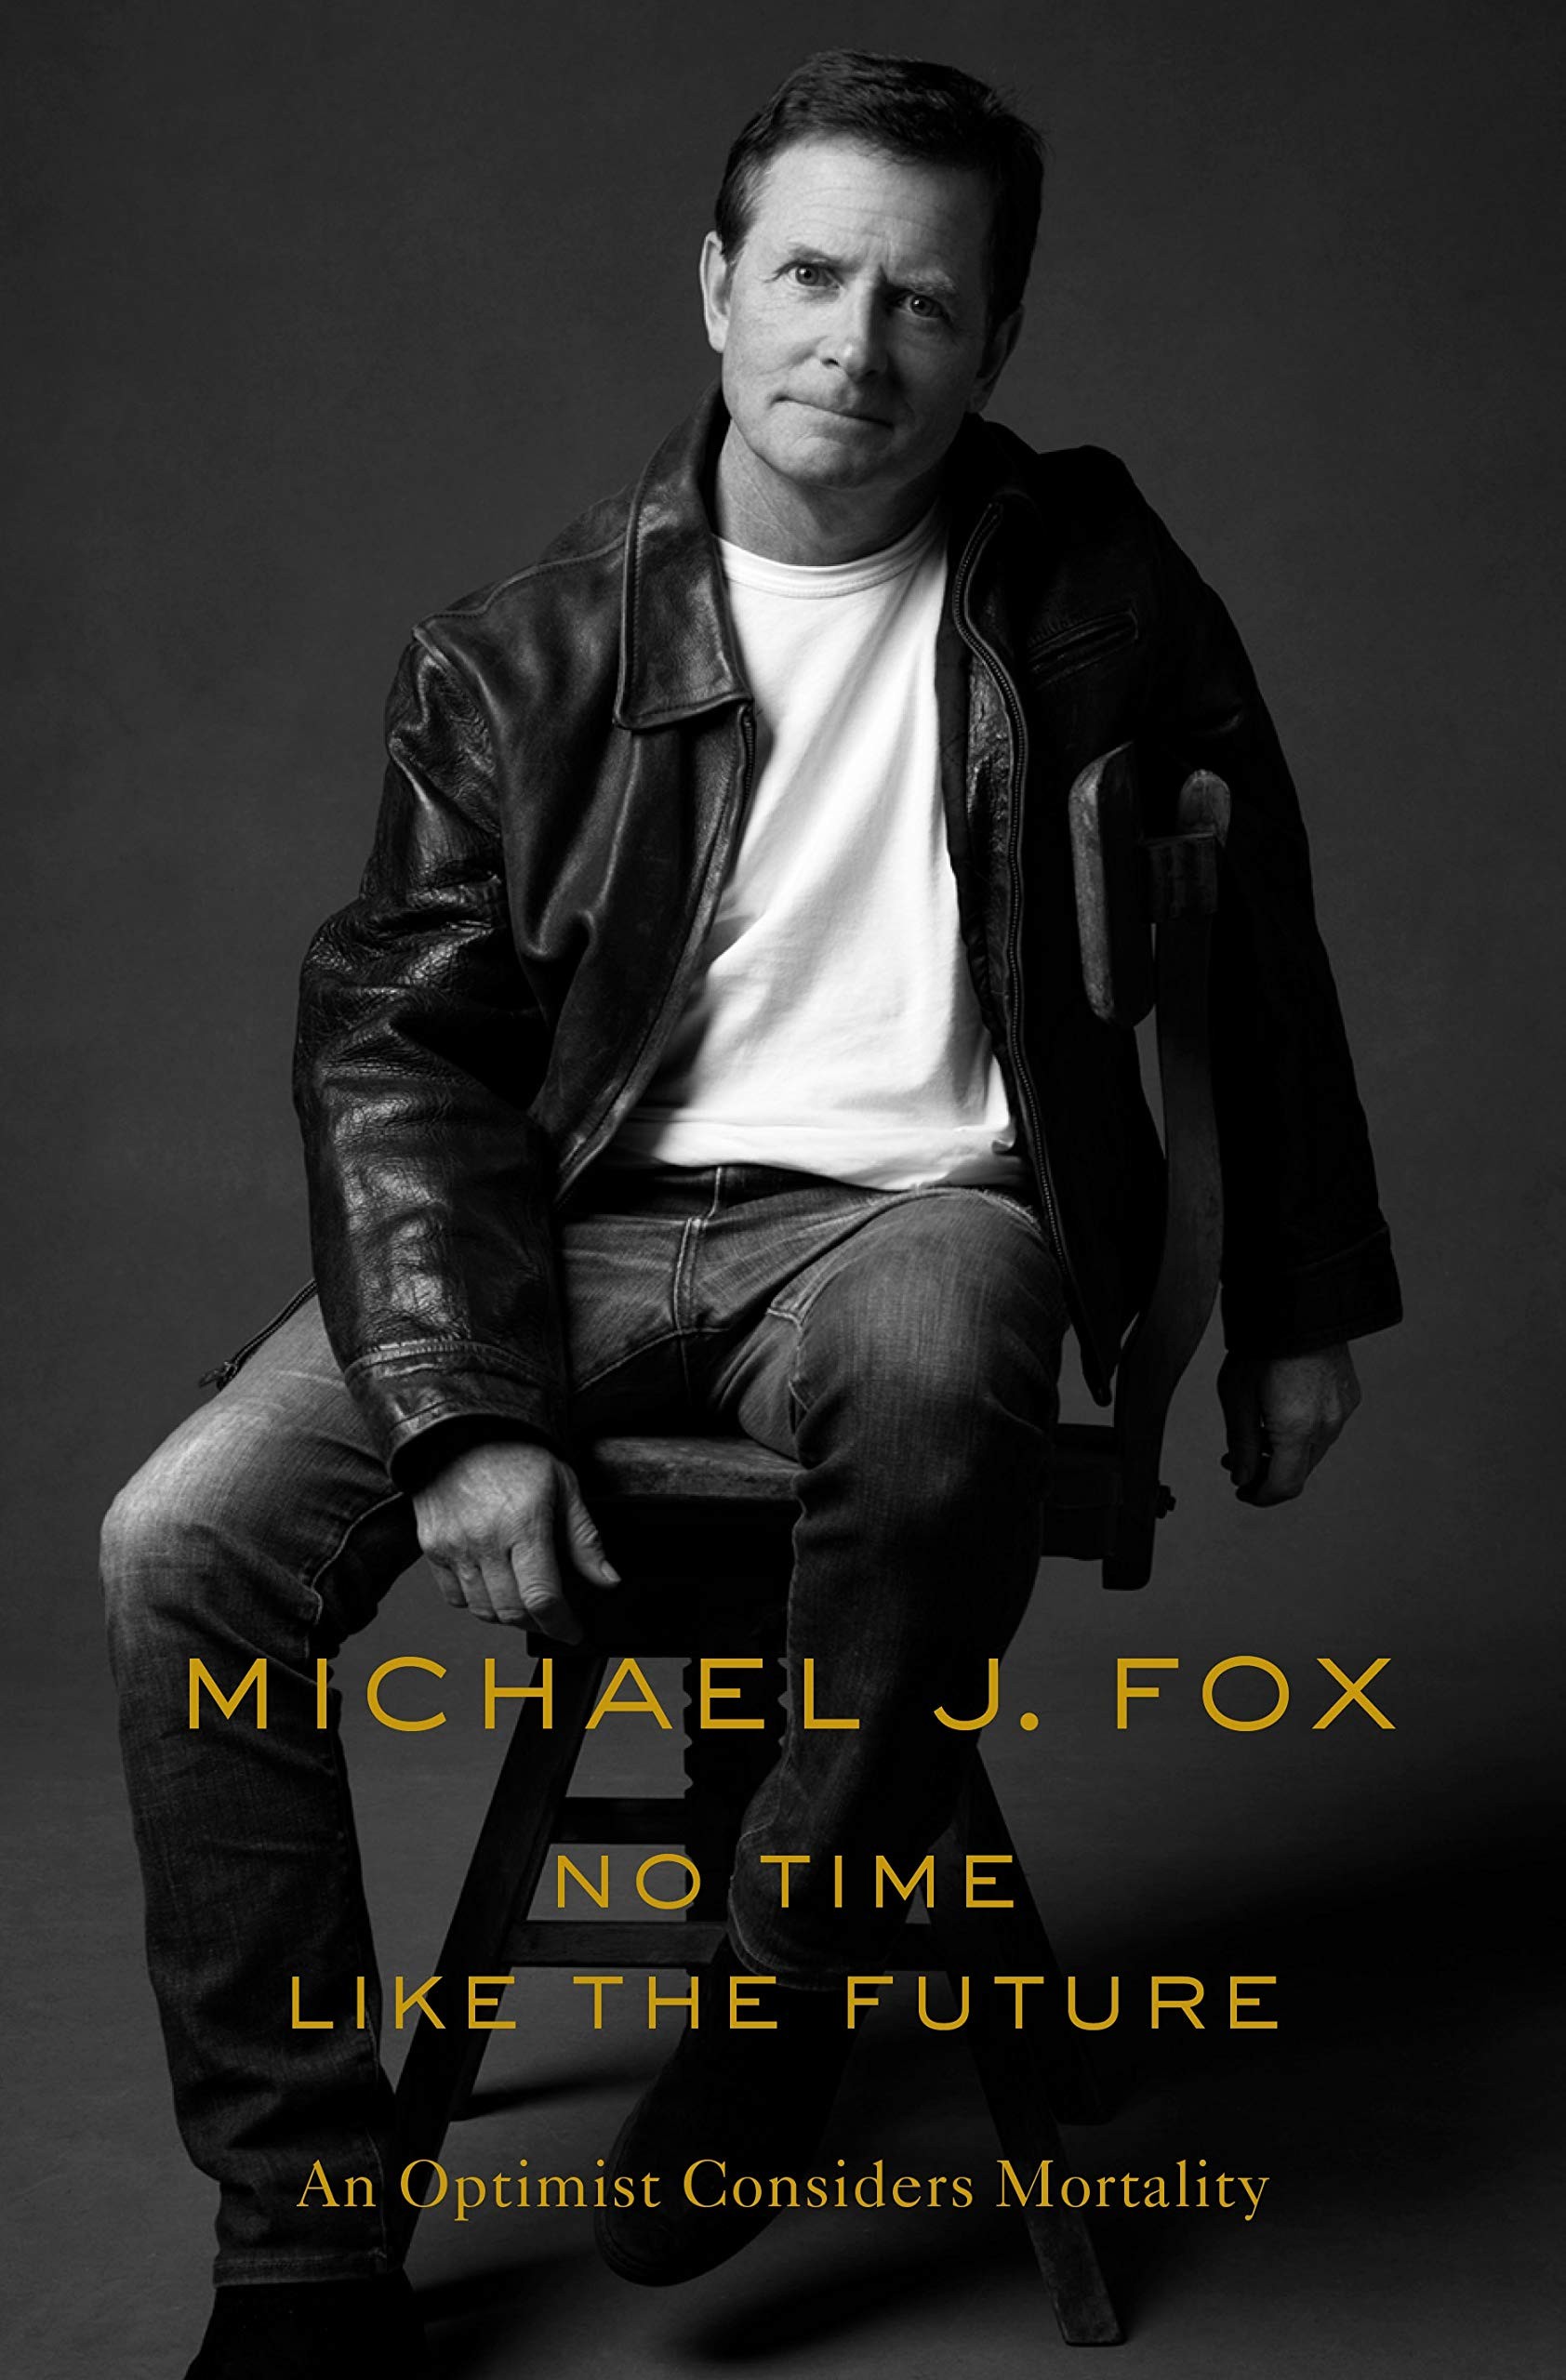 A capa da autobiografia do ator Michael J. Fox (Foto: Divulgação)